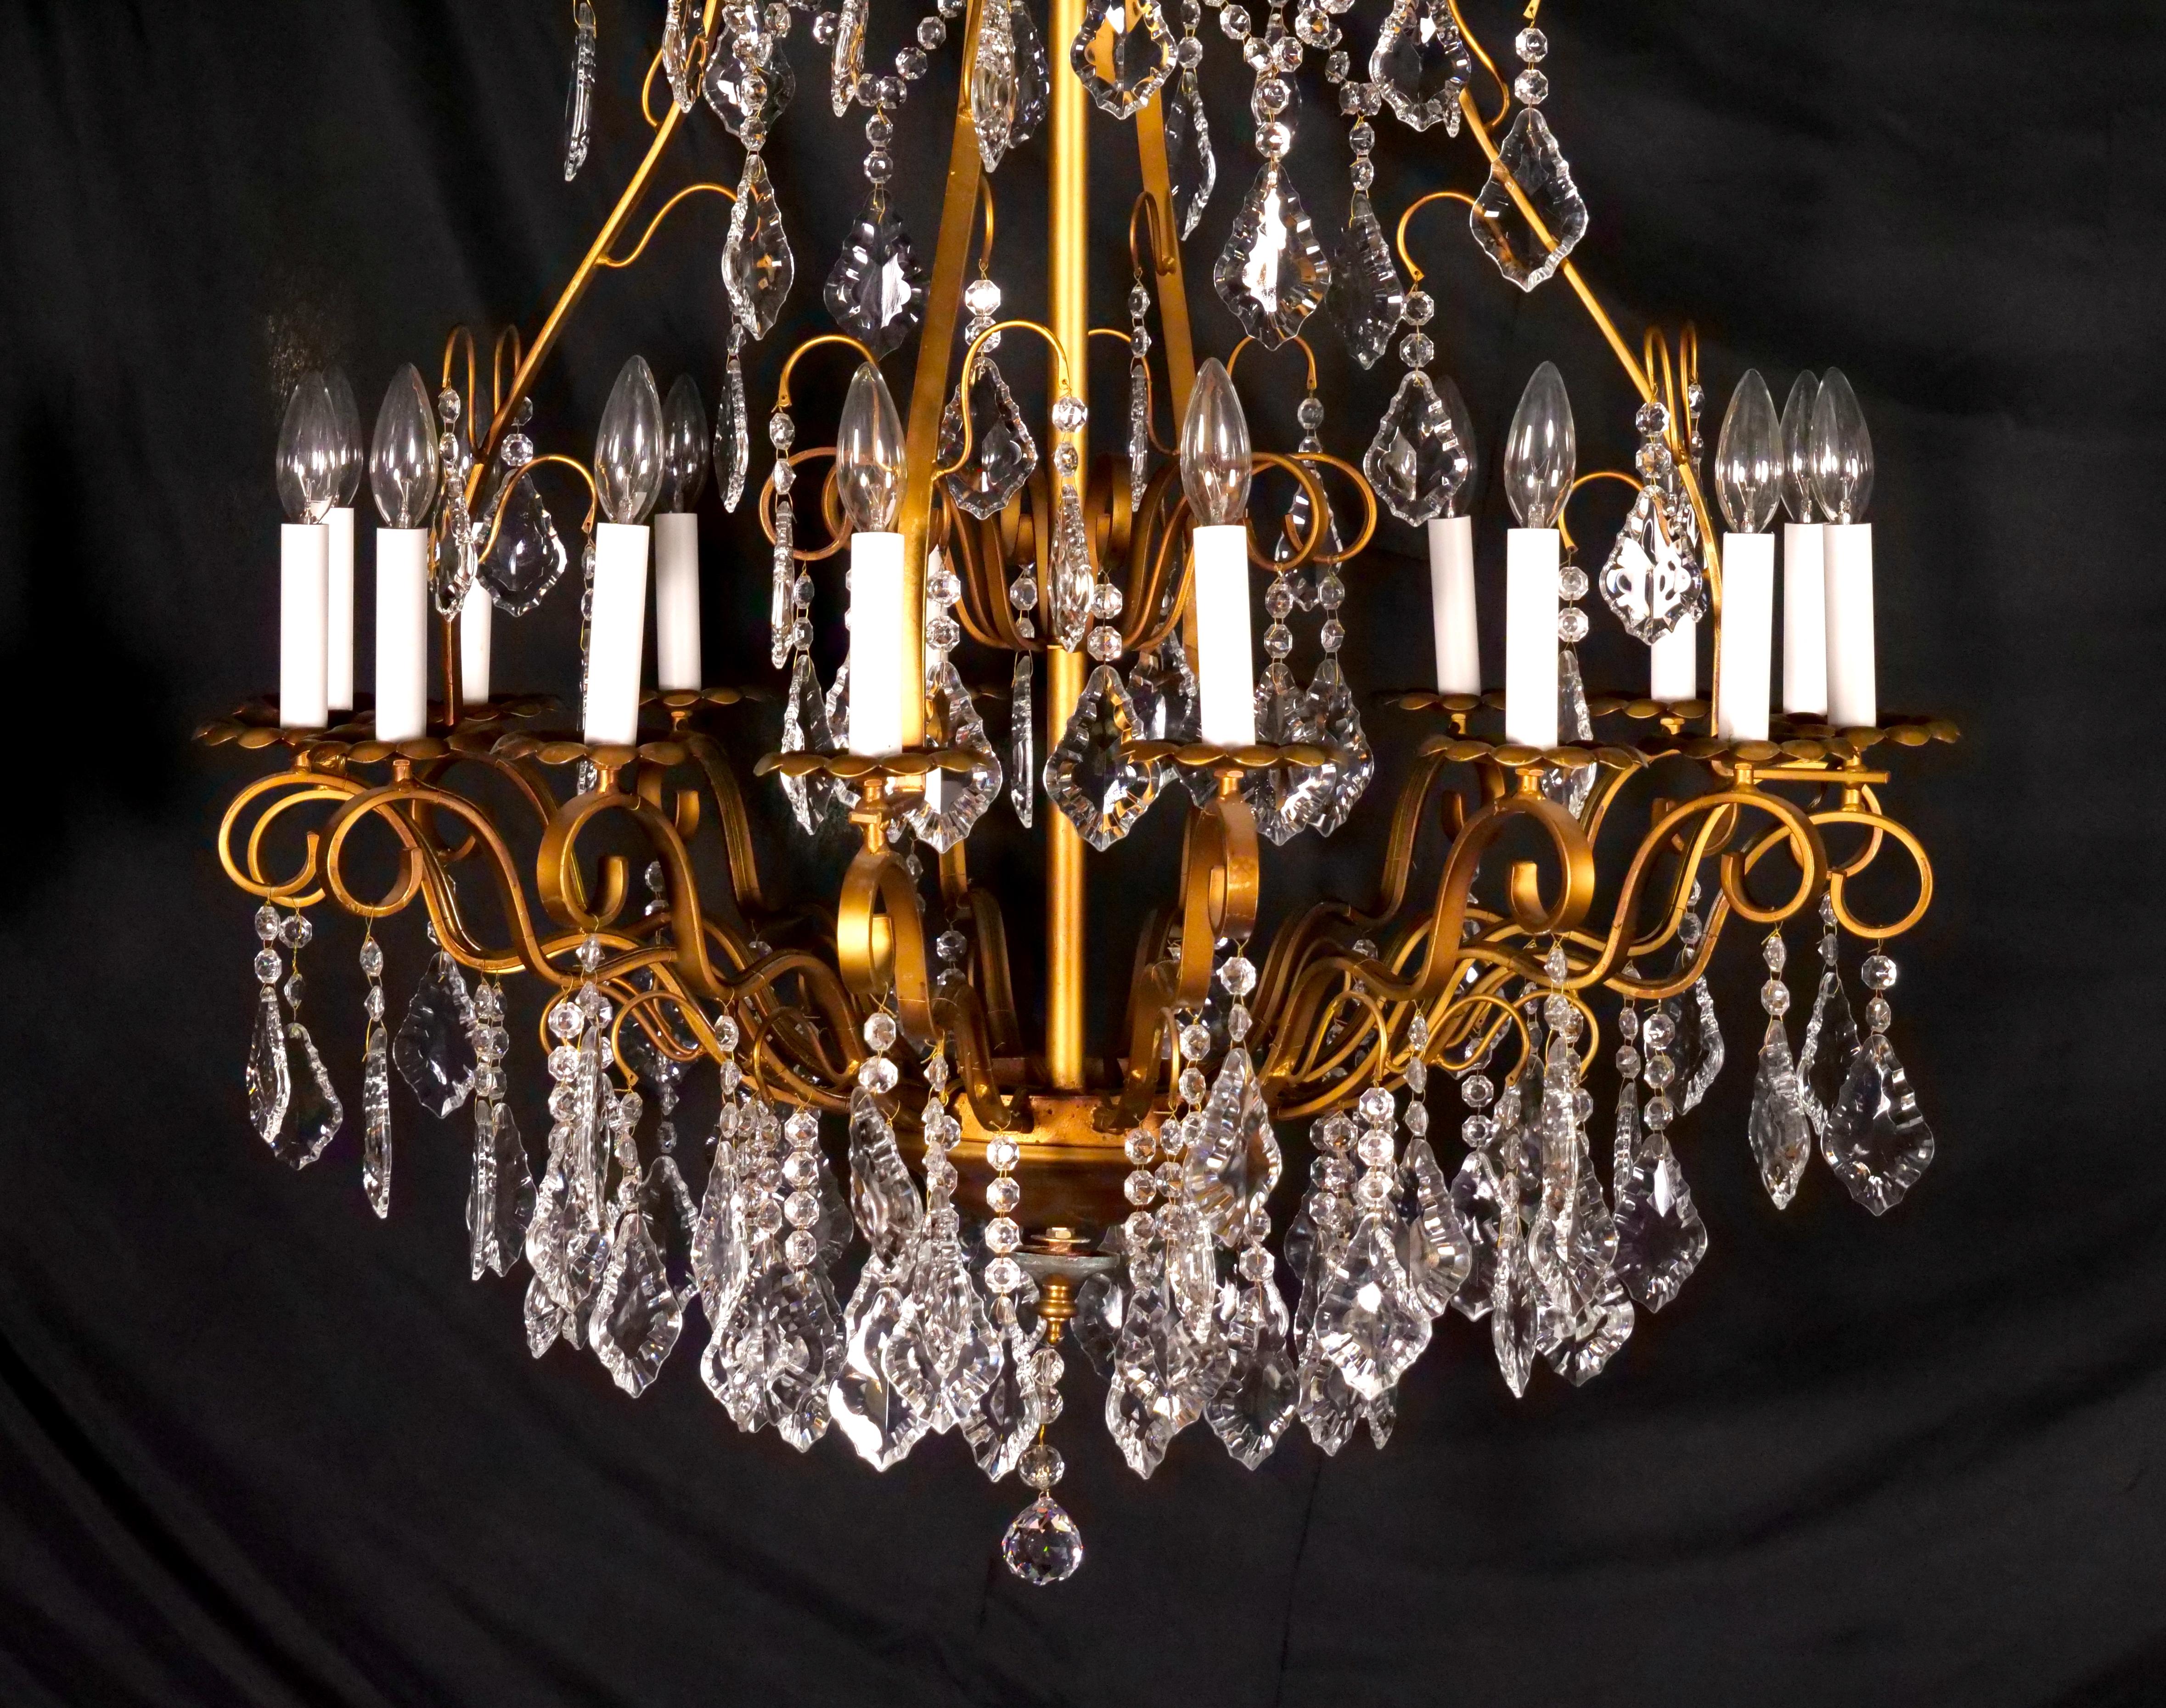 Erhöhen Sie Ihren Raum mit der Grandeur dieses beeindruckenden italienischen Kronleuchters aus dem frühen 20. Jahrhundert mit vergoldetem Messingrahmen und sechzehn Lichtern aus geschliffenem Kristall. Dieser Kronleuchter ist ein großartiges